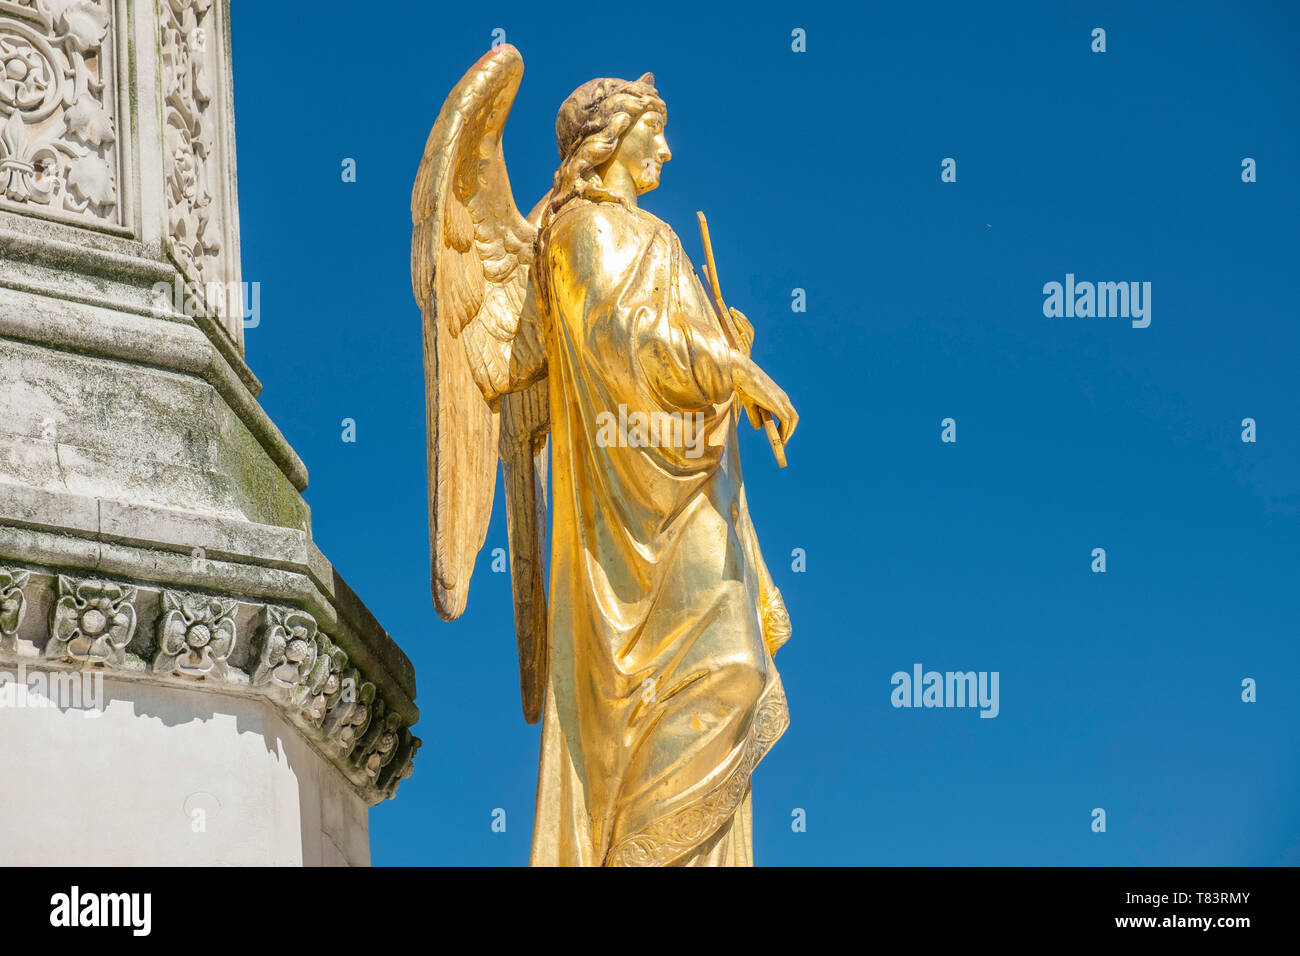 Maria colonna con golden statue degli angeli di fronte cattedrale di Zagabria, Croazia, cielo blu Foto Stock